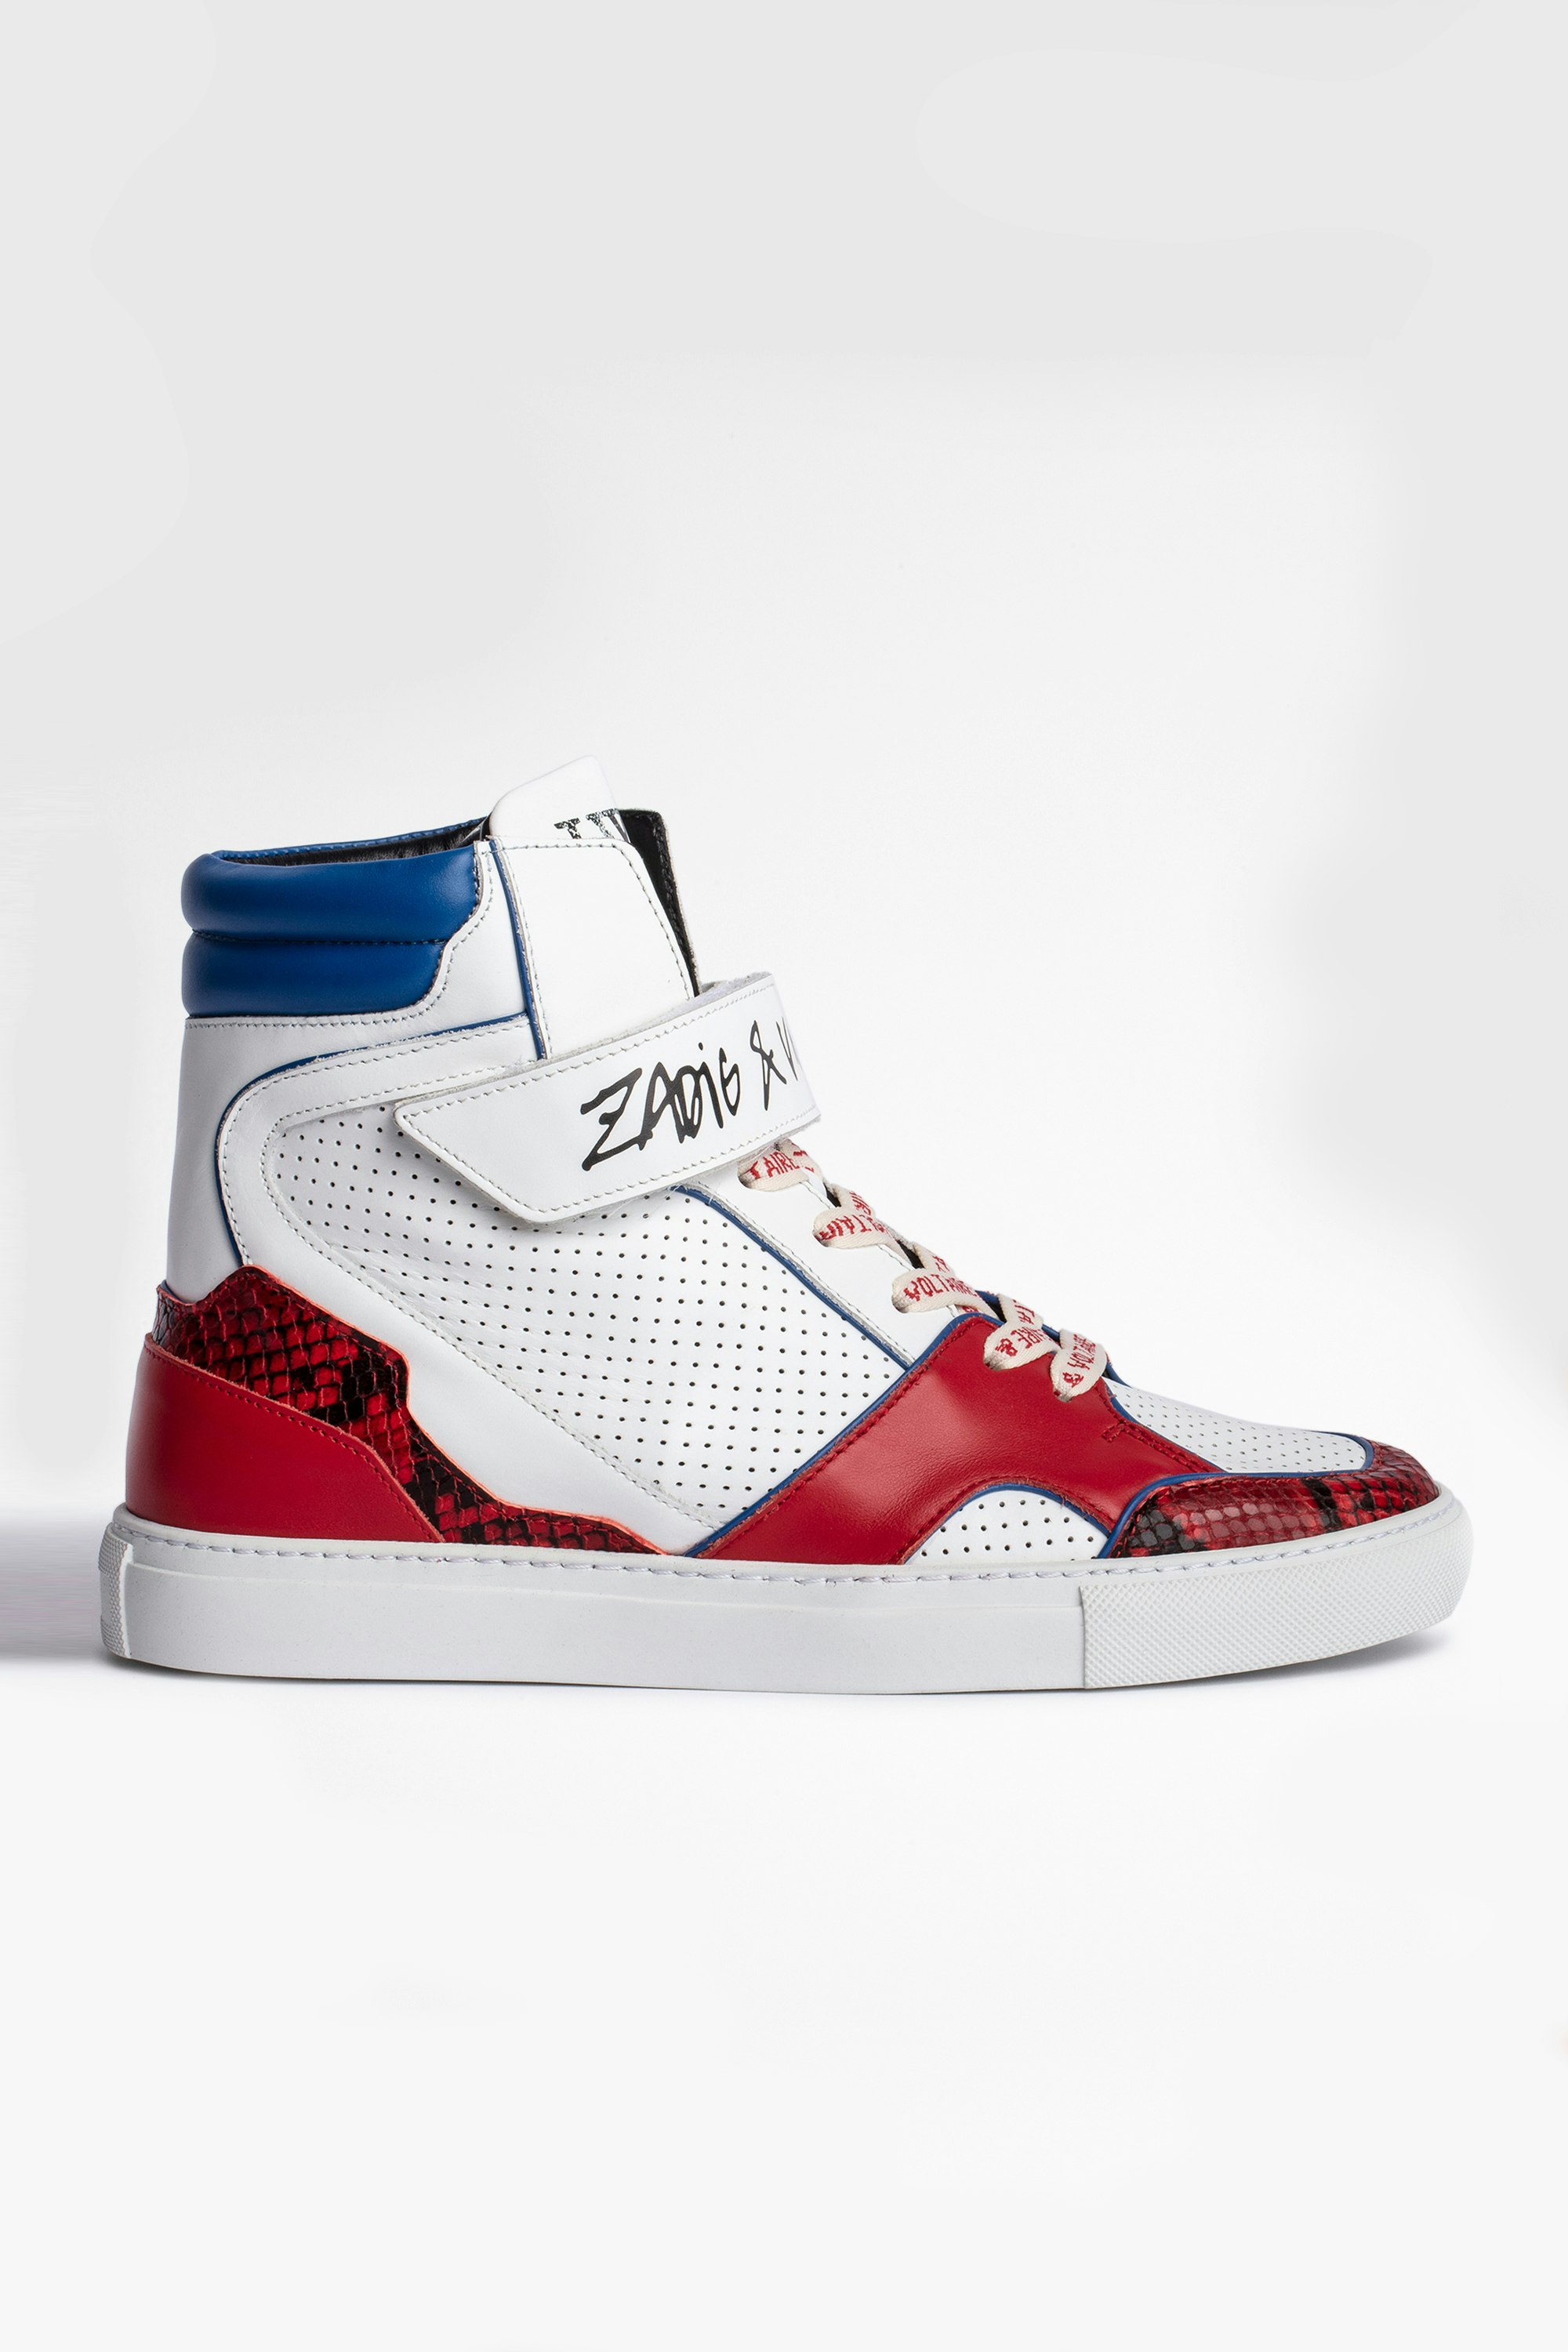 Sneakers ZV1747 High Flash Damen-Sneakers mit hohem Schaft aus dreifarbigem Leder. Mit dem Kauf dieses Produkts unterstützen Sie eine verantwortungsvolle Lederproduktion gemäß der Leather Working Group.